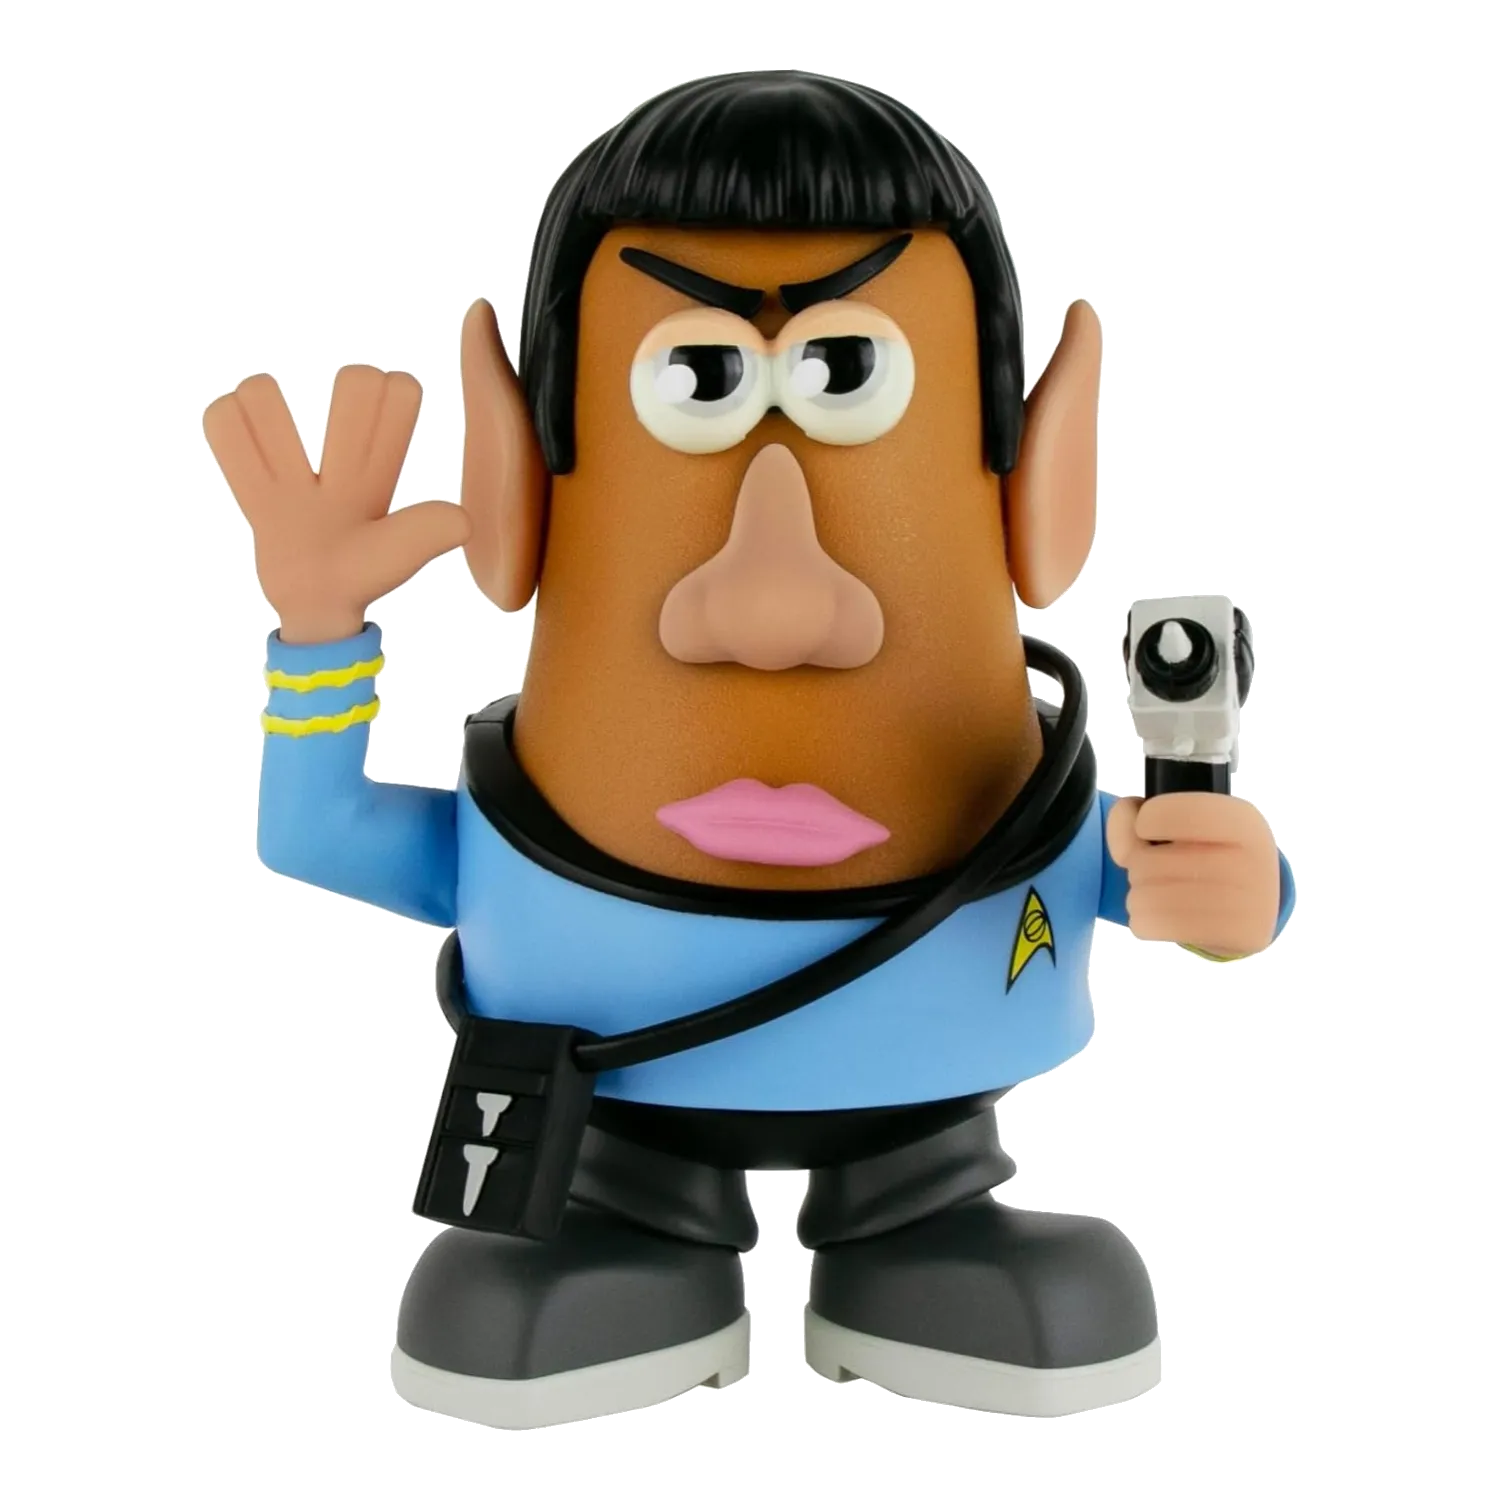 Mr. Potato Head de Star Trek con Spock